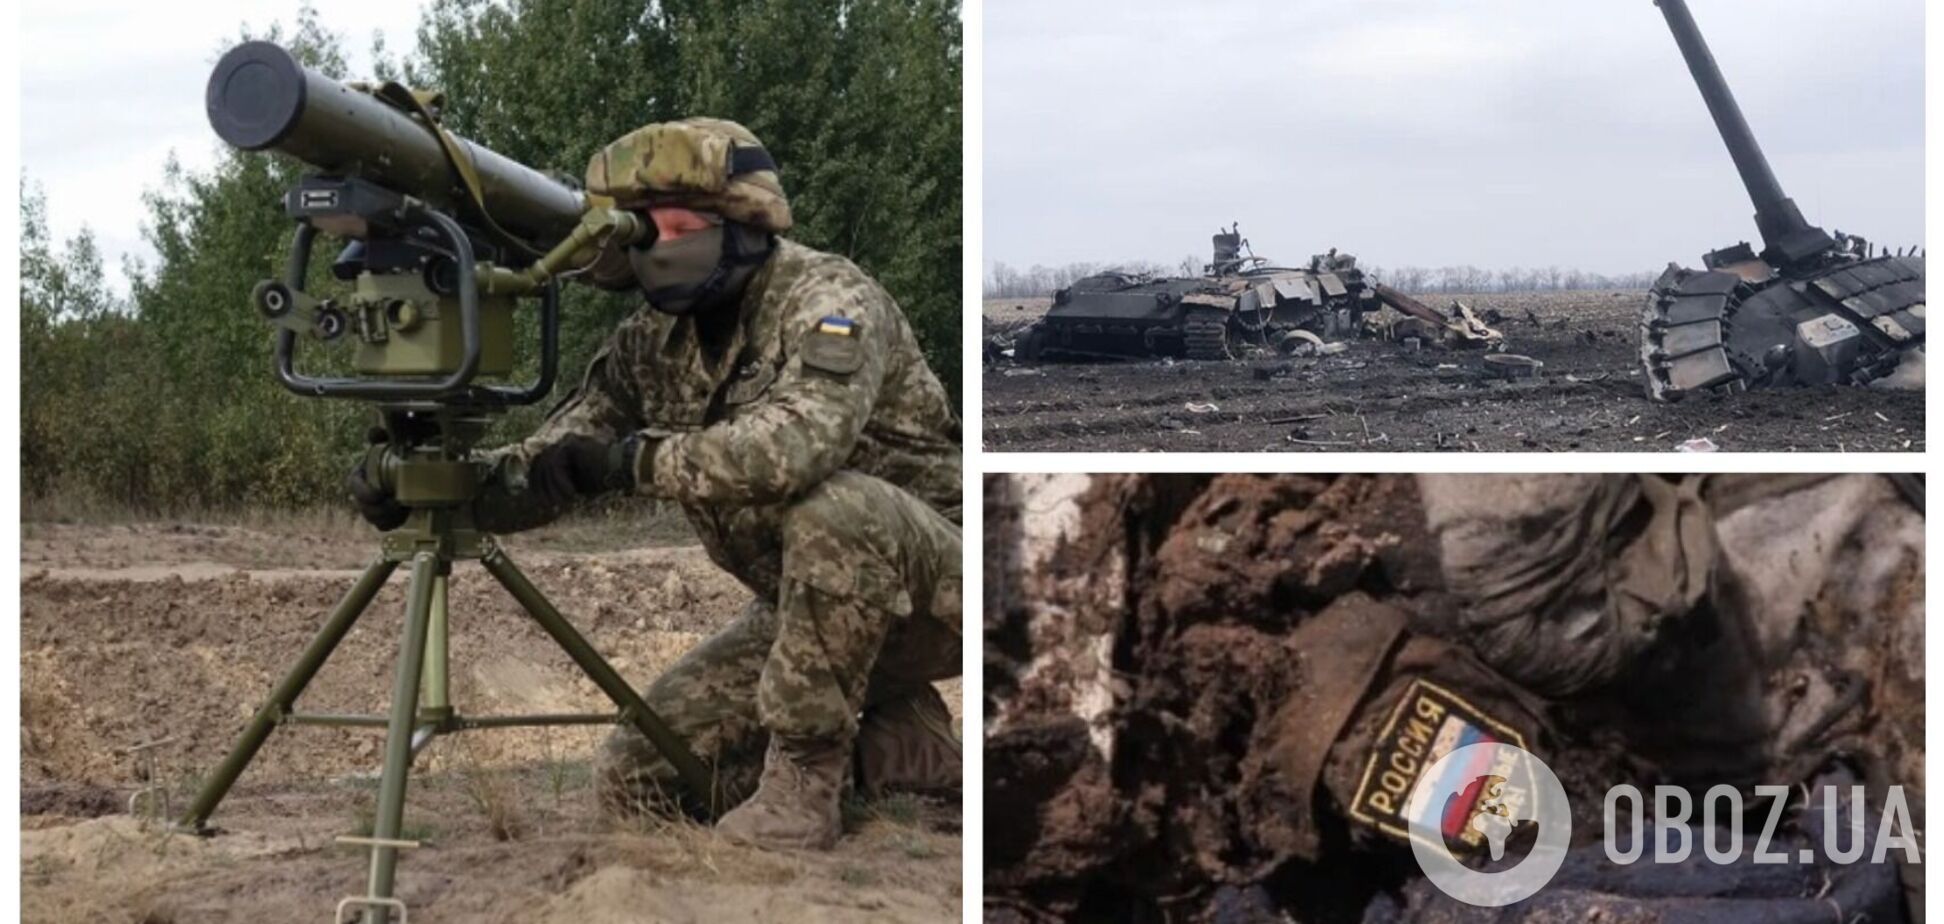 Защитники Украины с помощью ПТРК 'Стугна-П' уничтожили вражескую бронемашину и ее экипаж. Видео